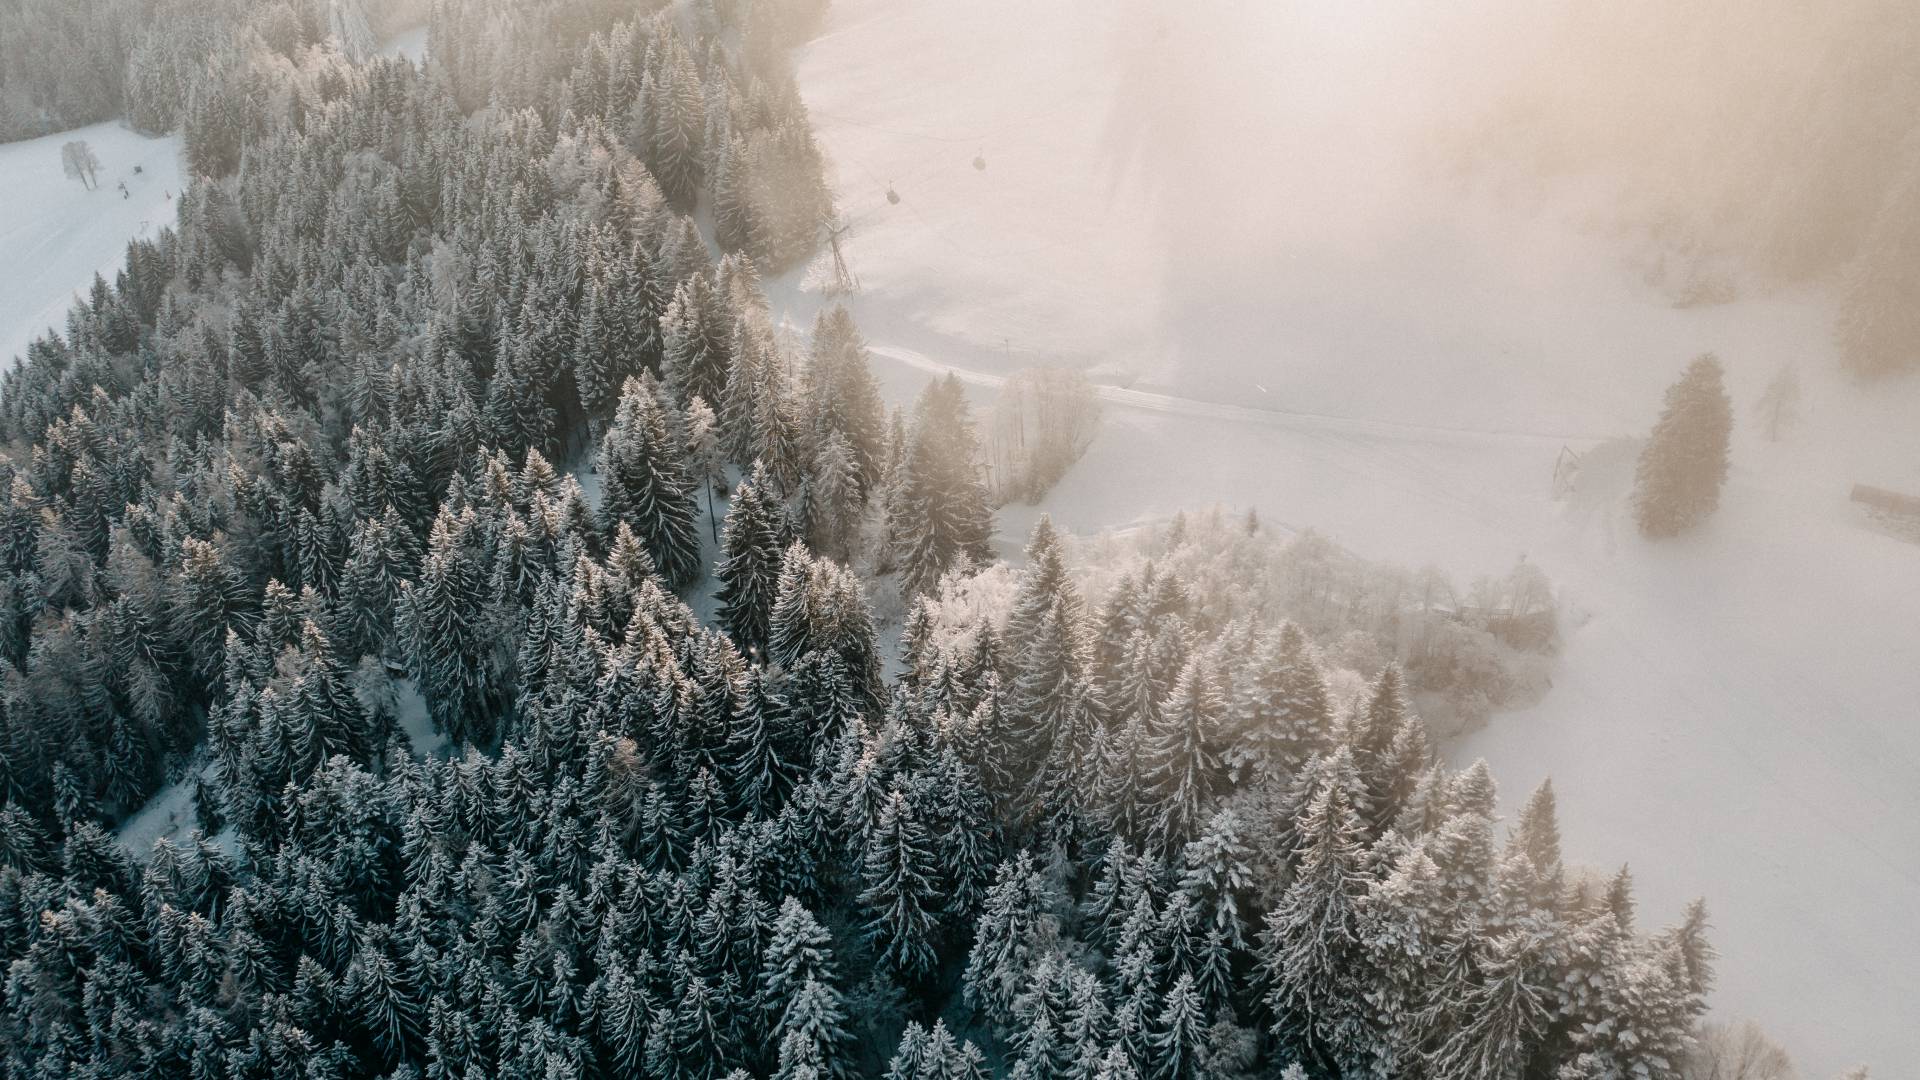  Winter forest in Austria